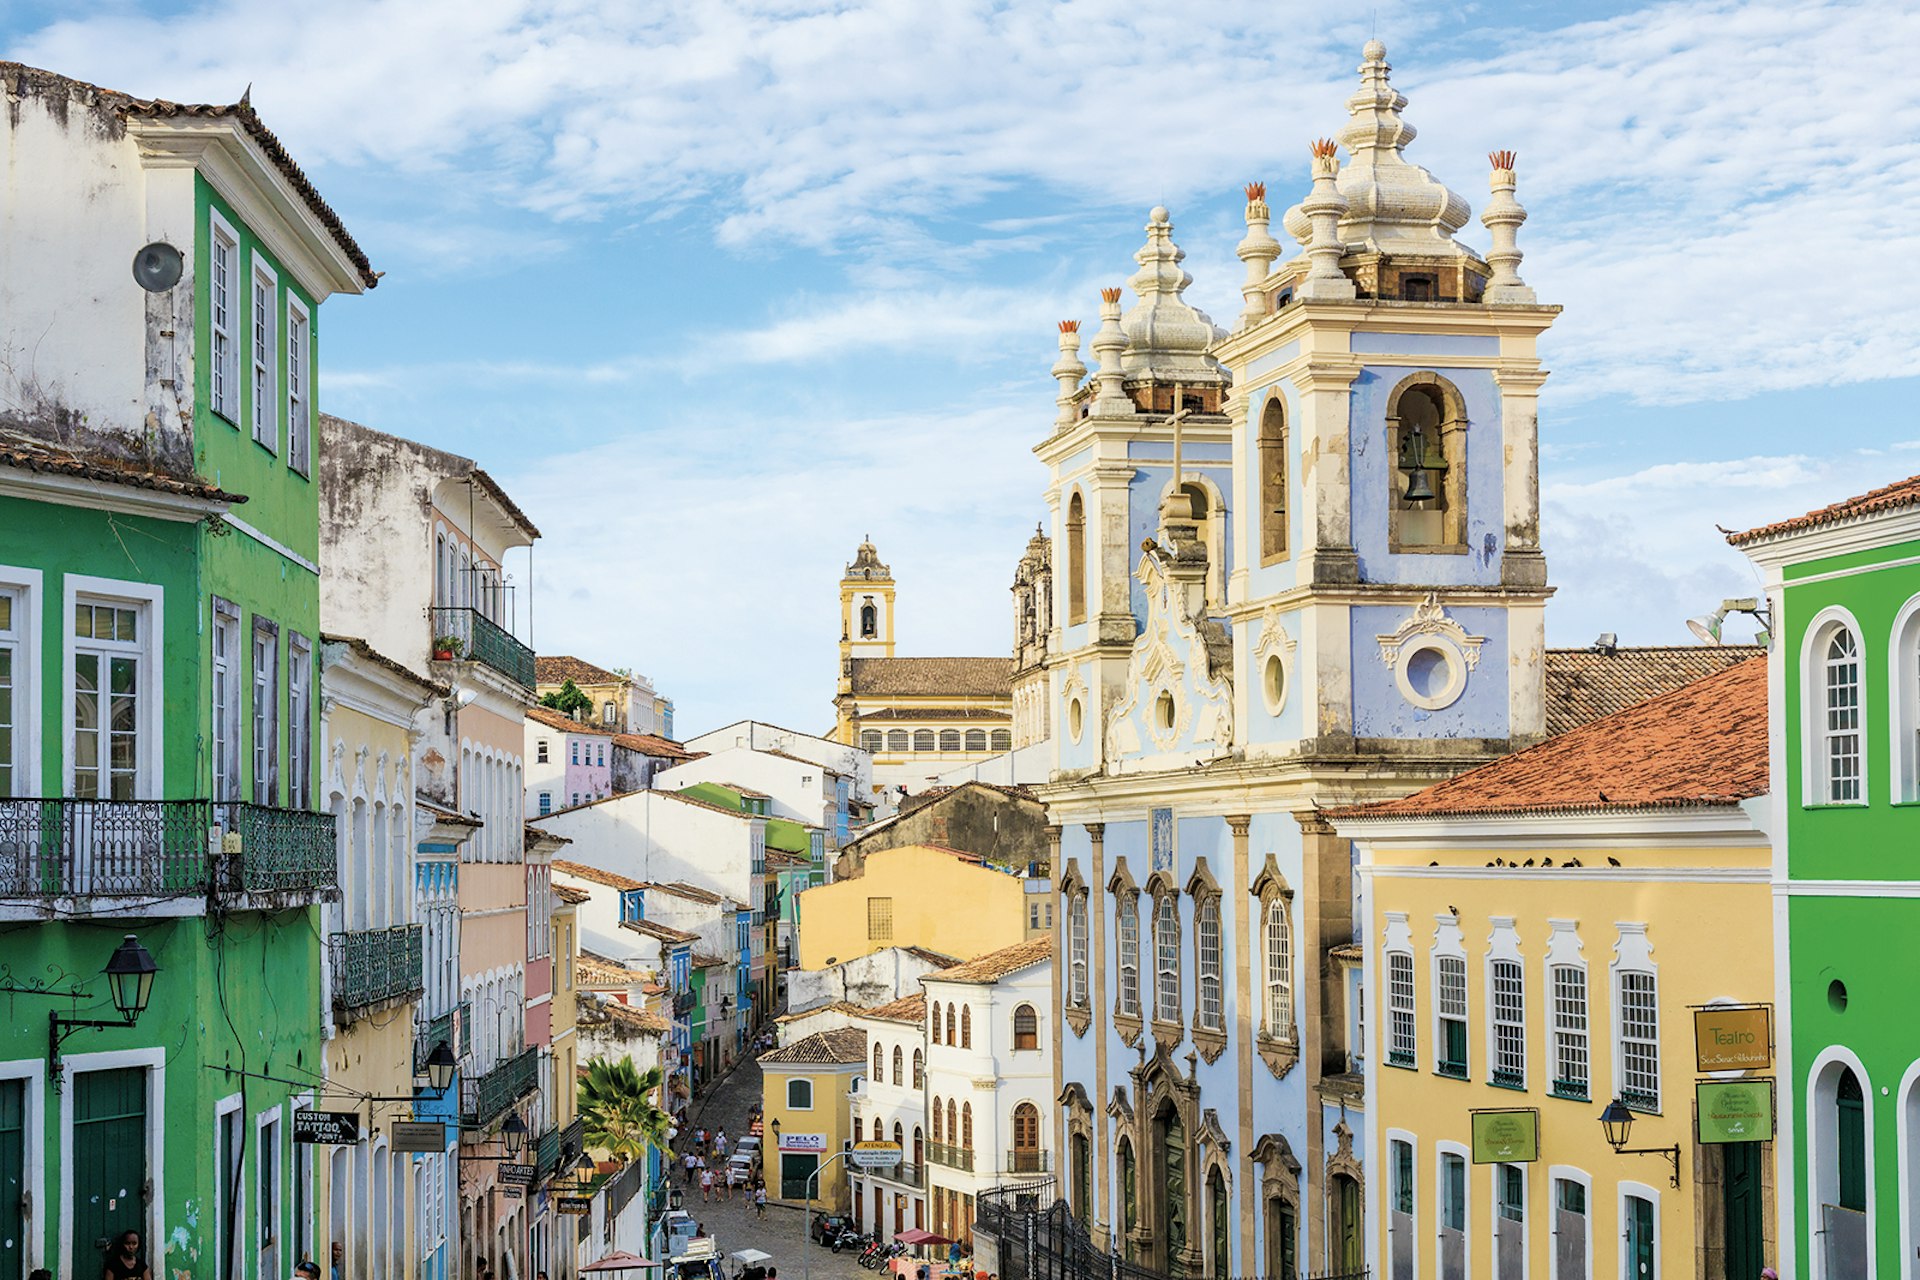 Pelourinho, Salvador, Bahia, Brazil © Thiago Leite / Shutterstock